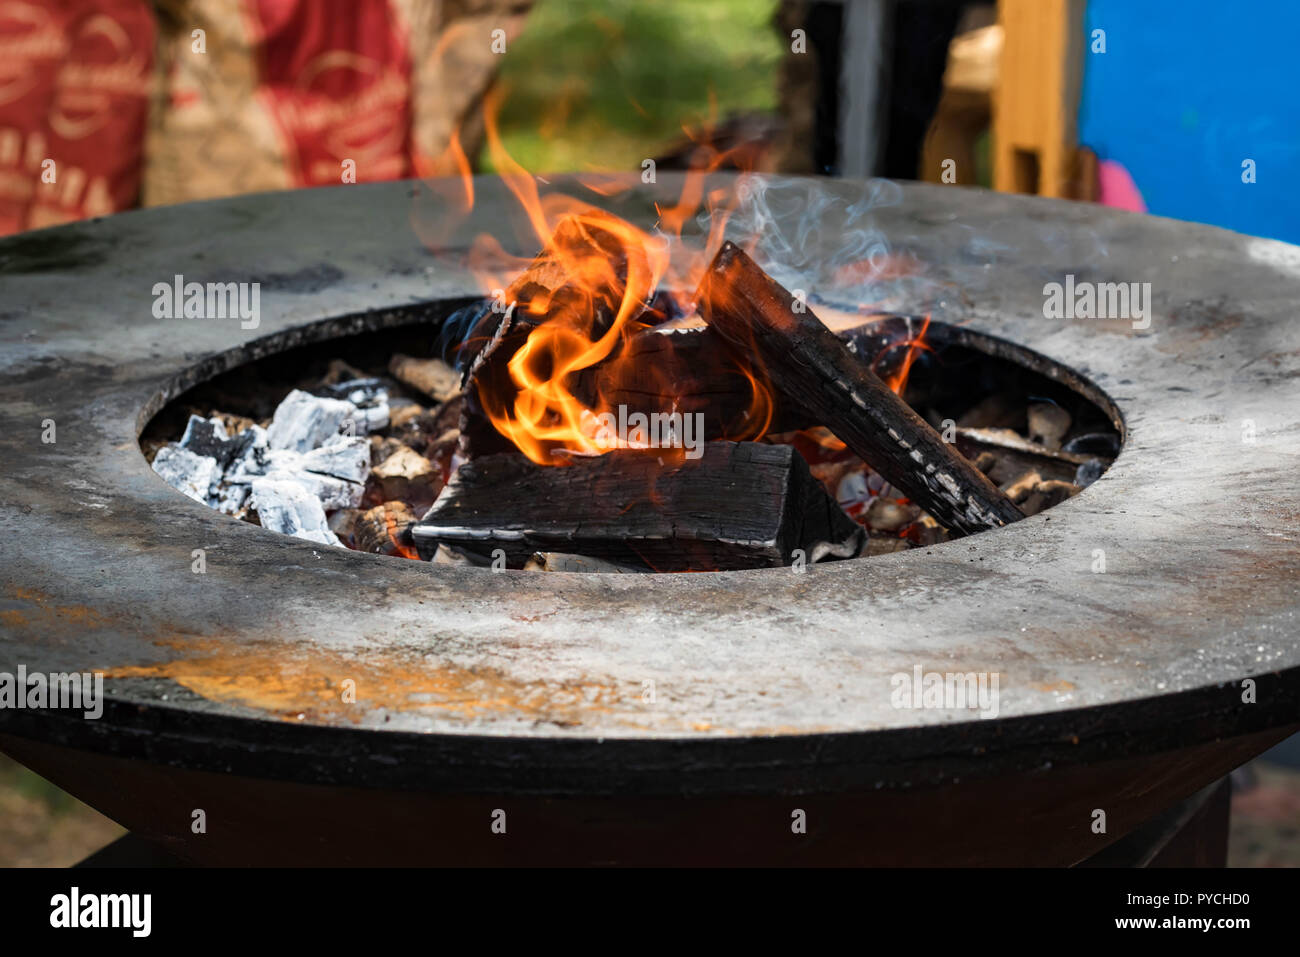 Le Barbecue grill rond avec du charbon et du feu au milieu Photo Stock -  Alamy